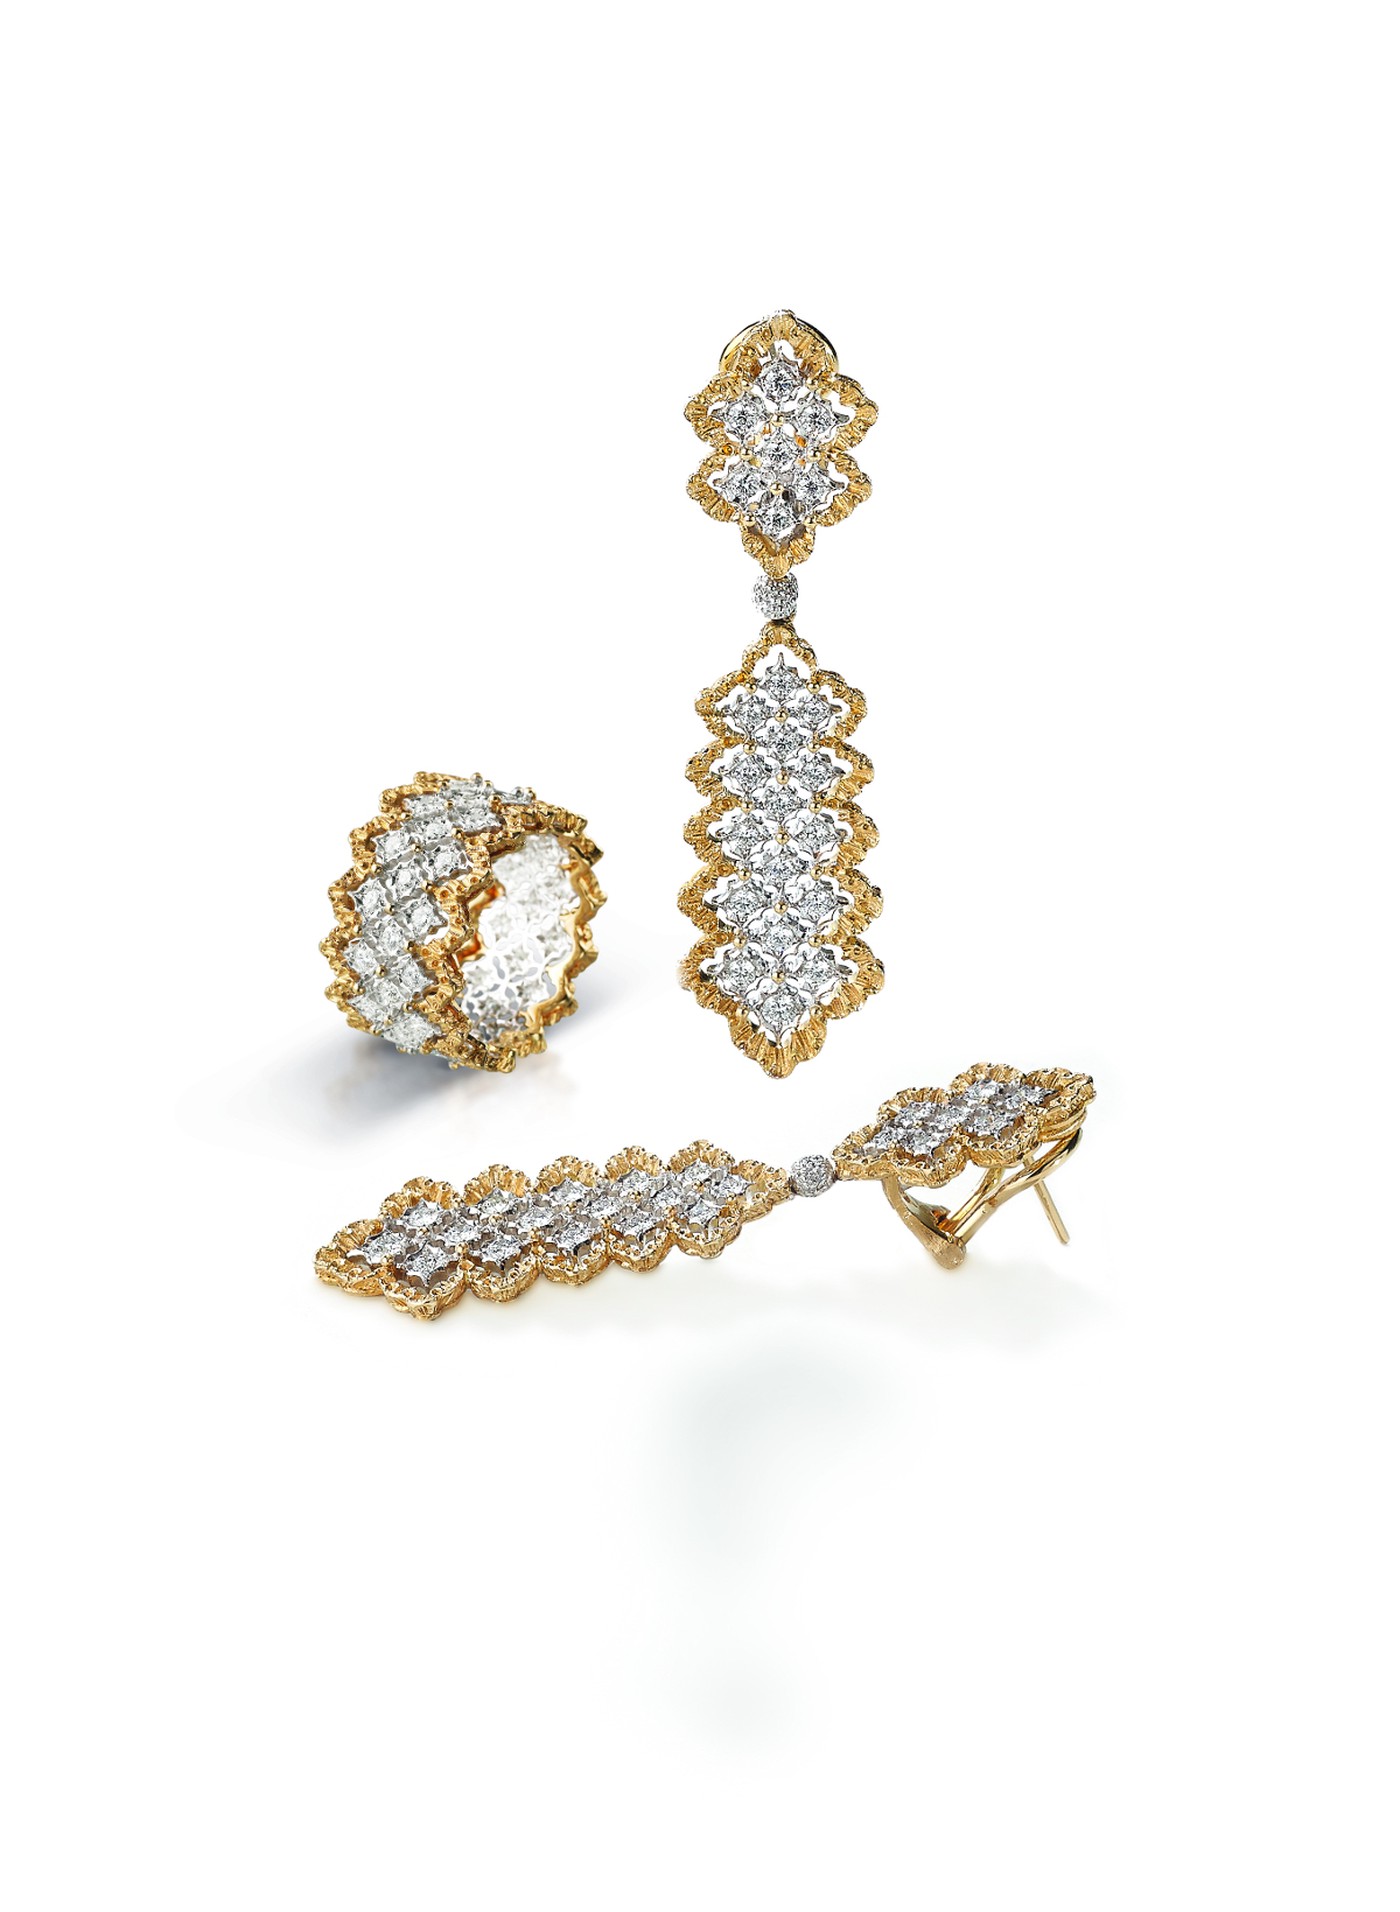 Boucles d’oreilles pendantes Rombi et bague assortie en or blanc sertie de diamants aux bords en or jaune festonnés